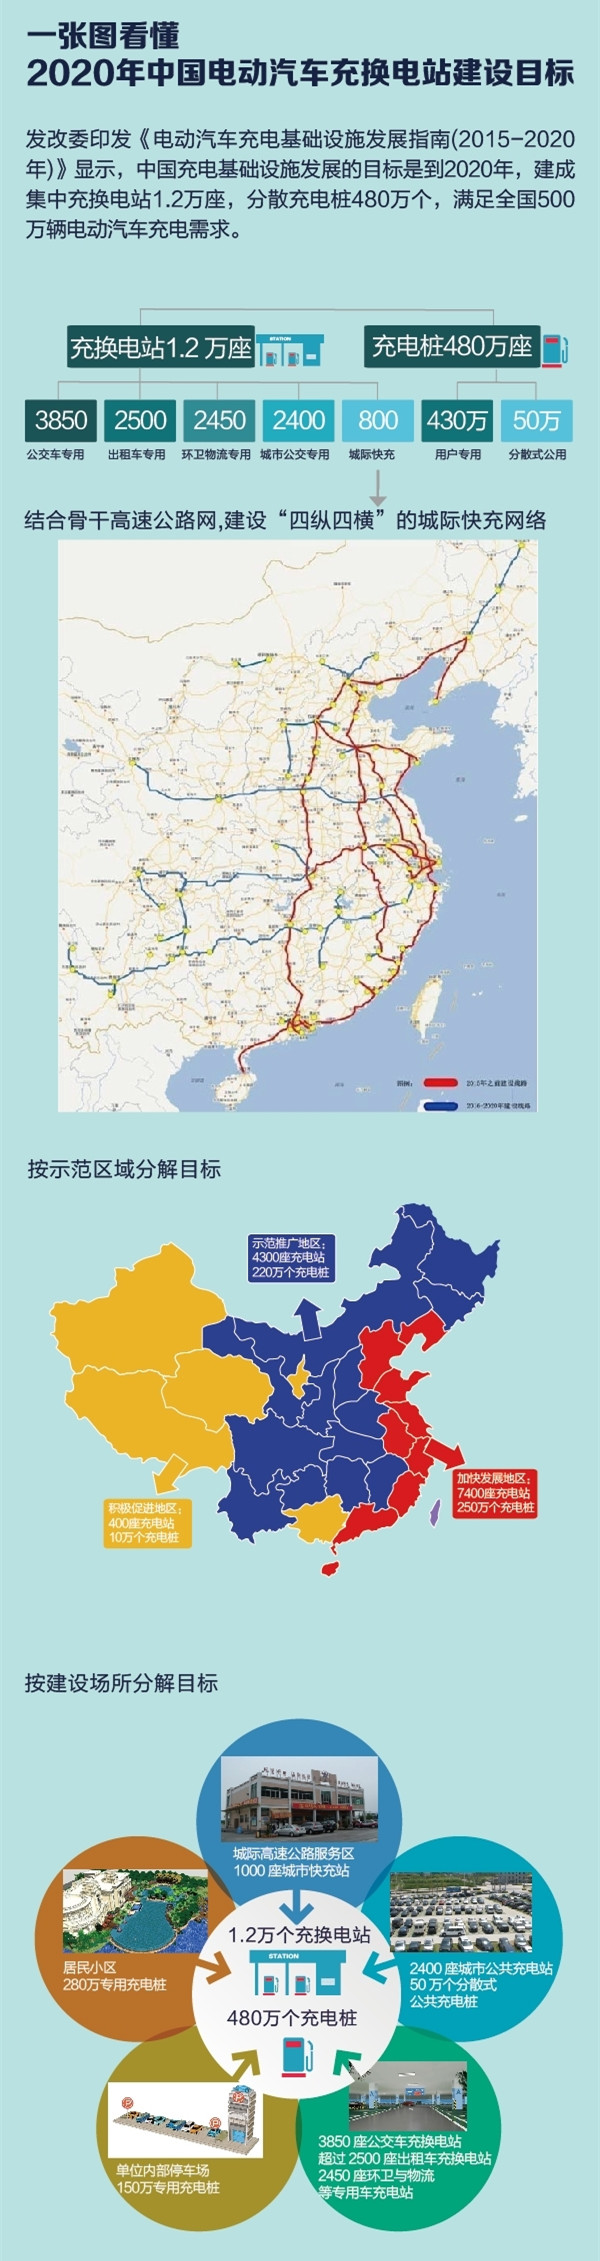 一张图看懂2020年中国电动汽车充换电站建设目标_副本.jpg